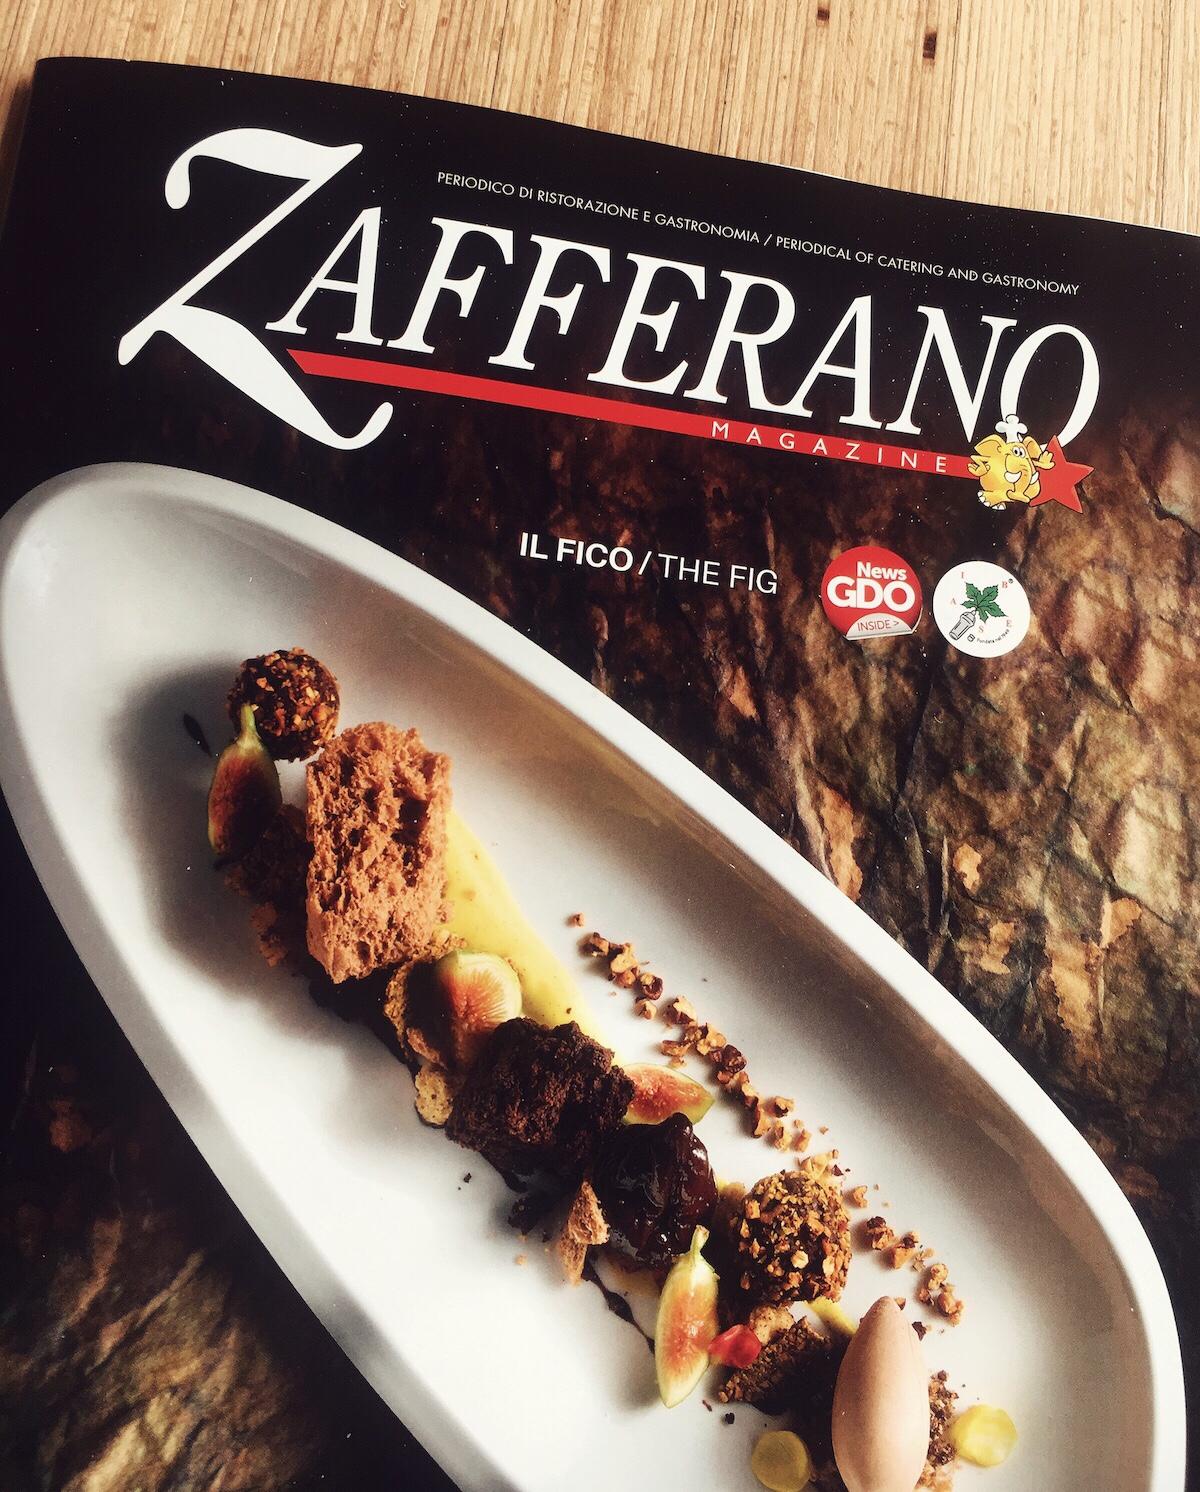 Copertina di dicembre 2018 di Zafferano Magazine con una ricetta dello Chef del Ristorante Stravento Rocco di Marzo